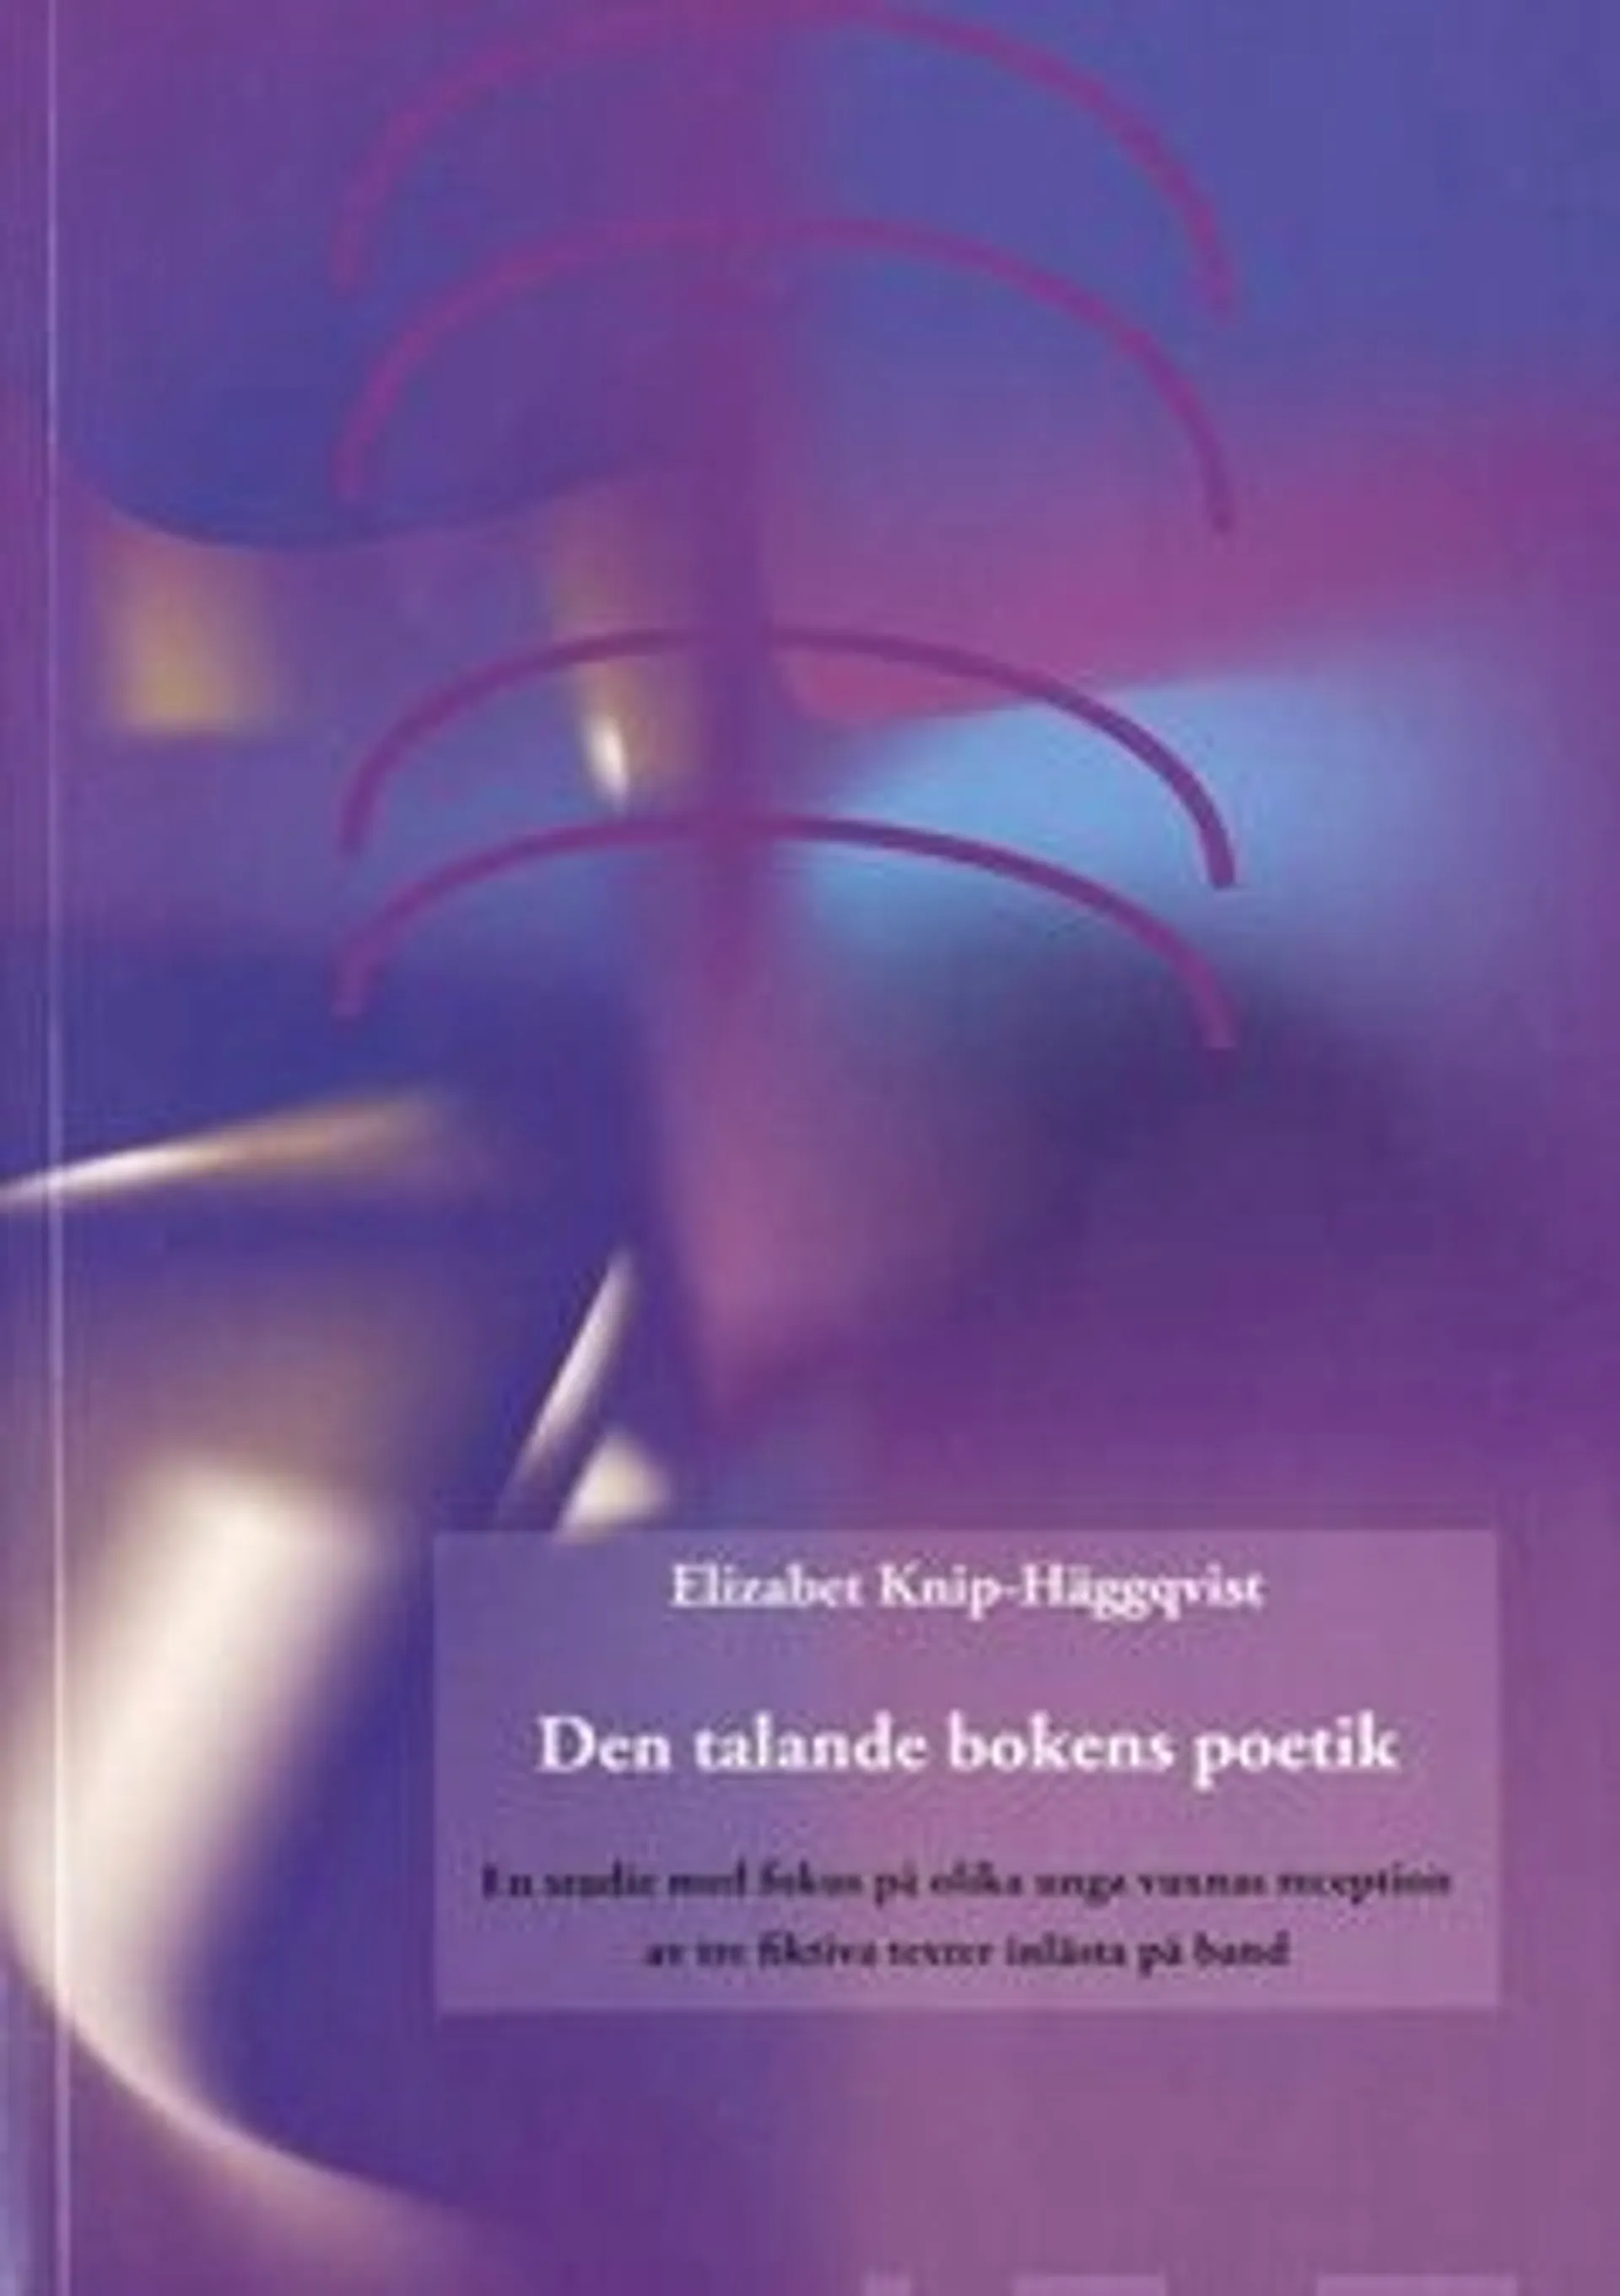 Knip-Häggqvist, Den talande bokens poetik